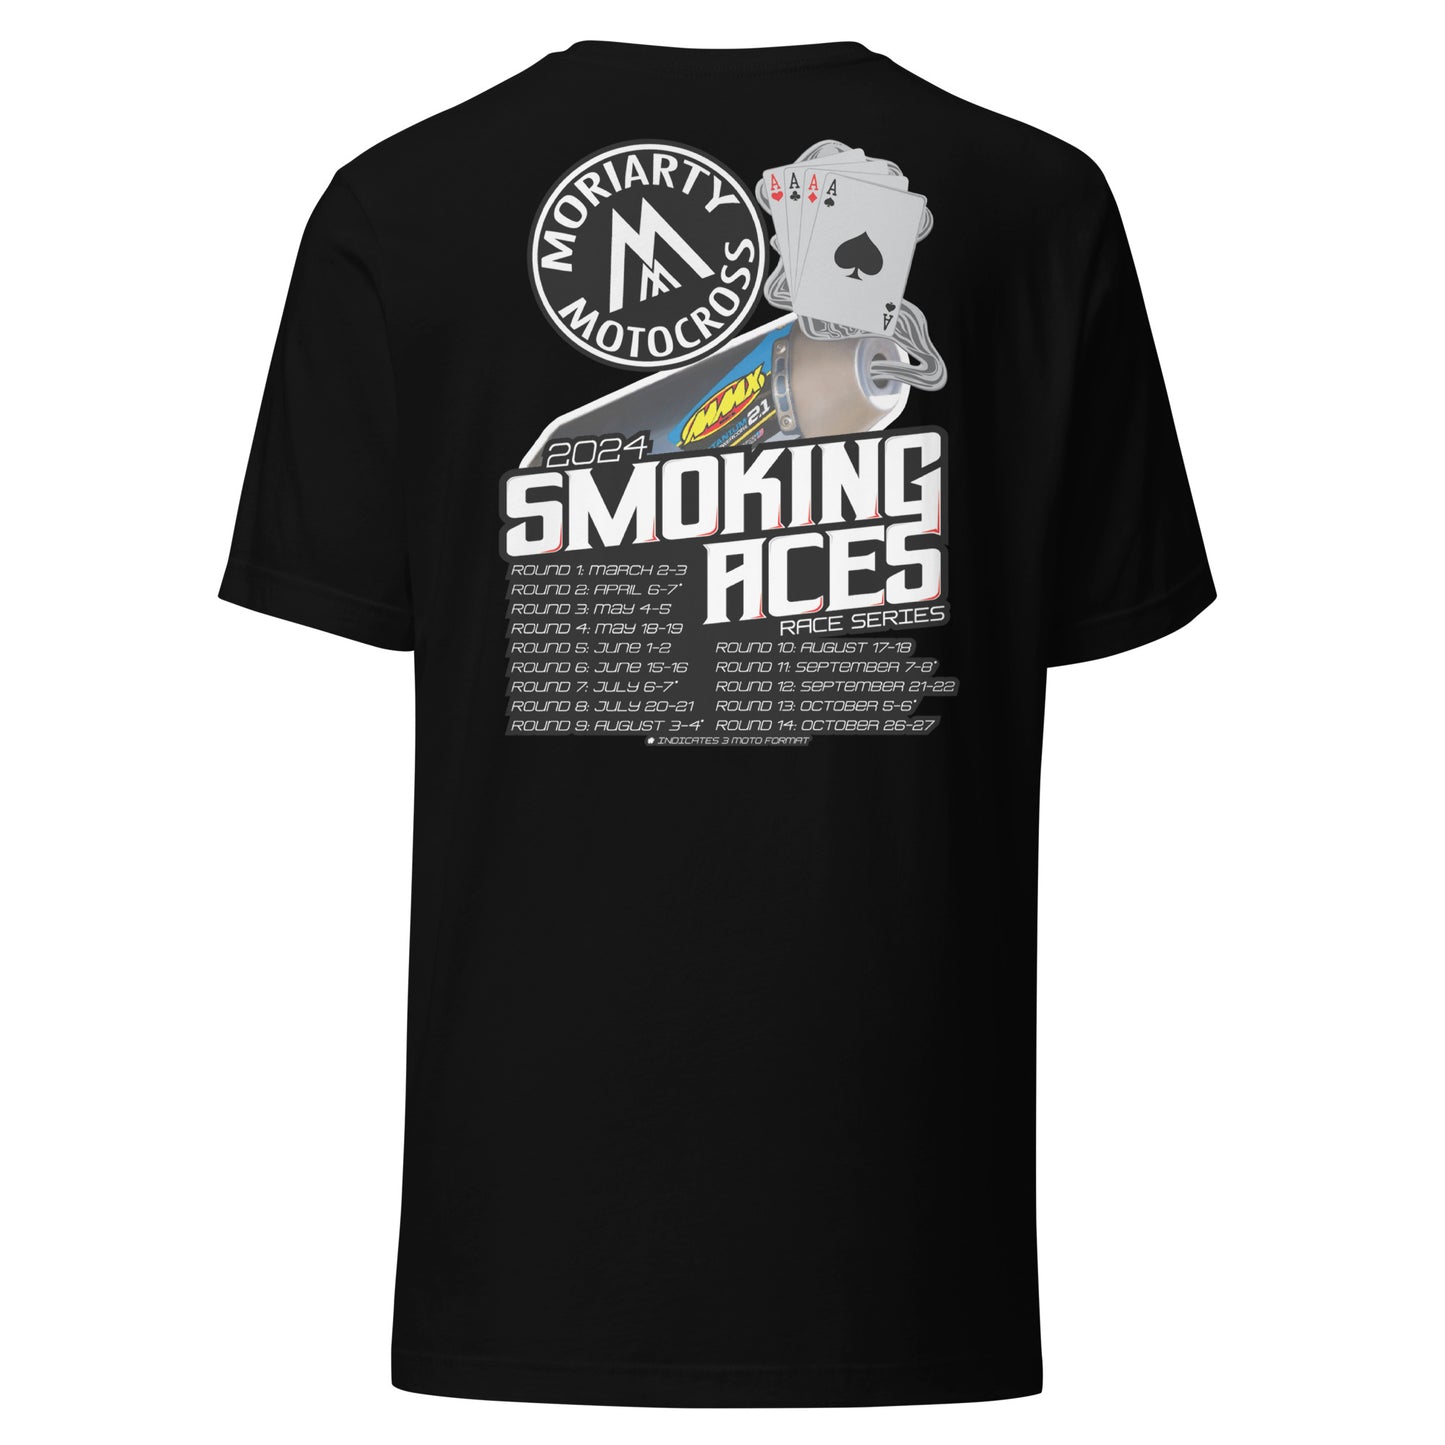 Moriarty MX Smoking Aces T-Shirt